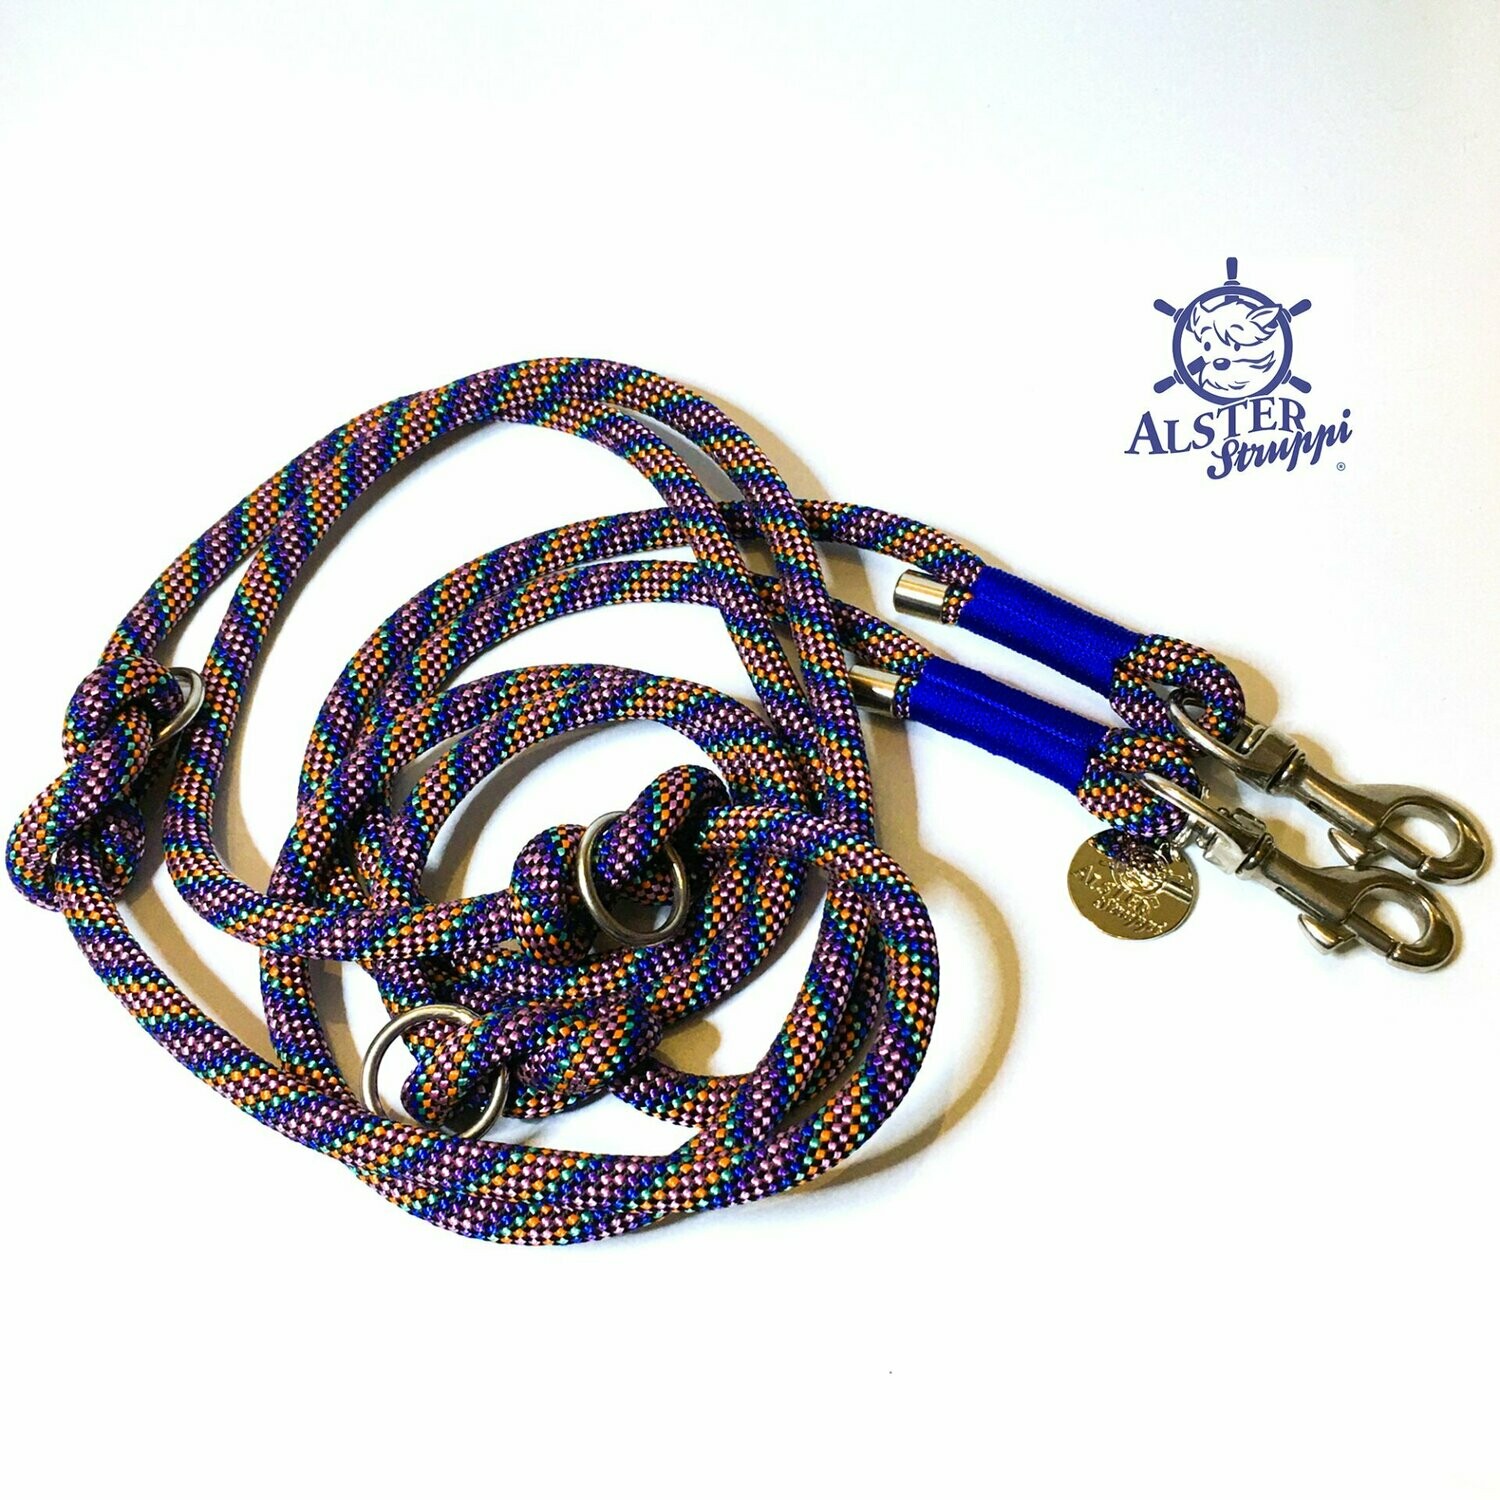 Für Iris - Leine Halsband Set anthrazit, blau, mint, lila, rosa, orange, verstellbar, mit Leder